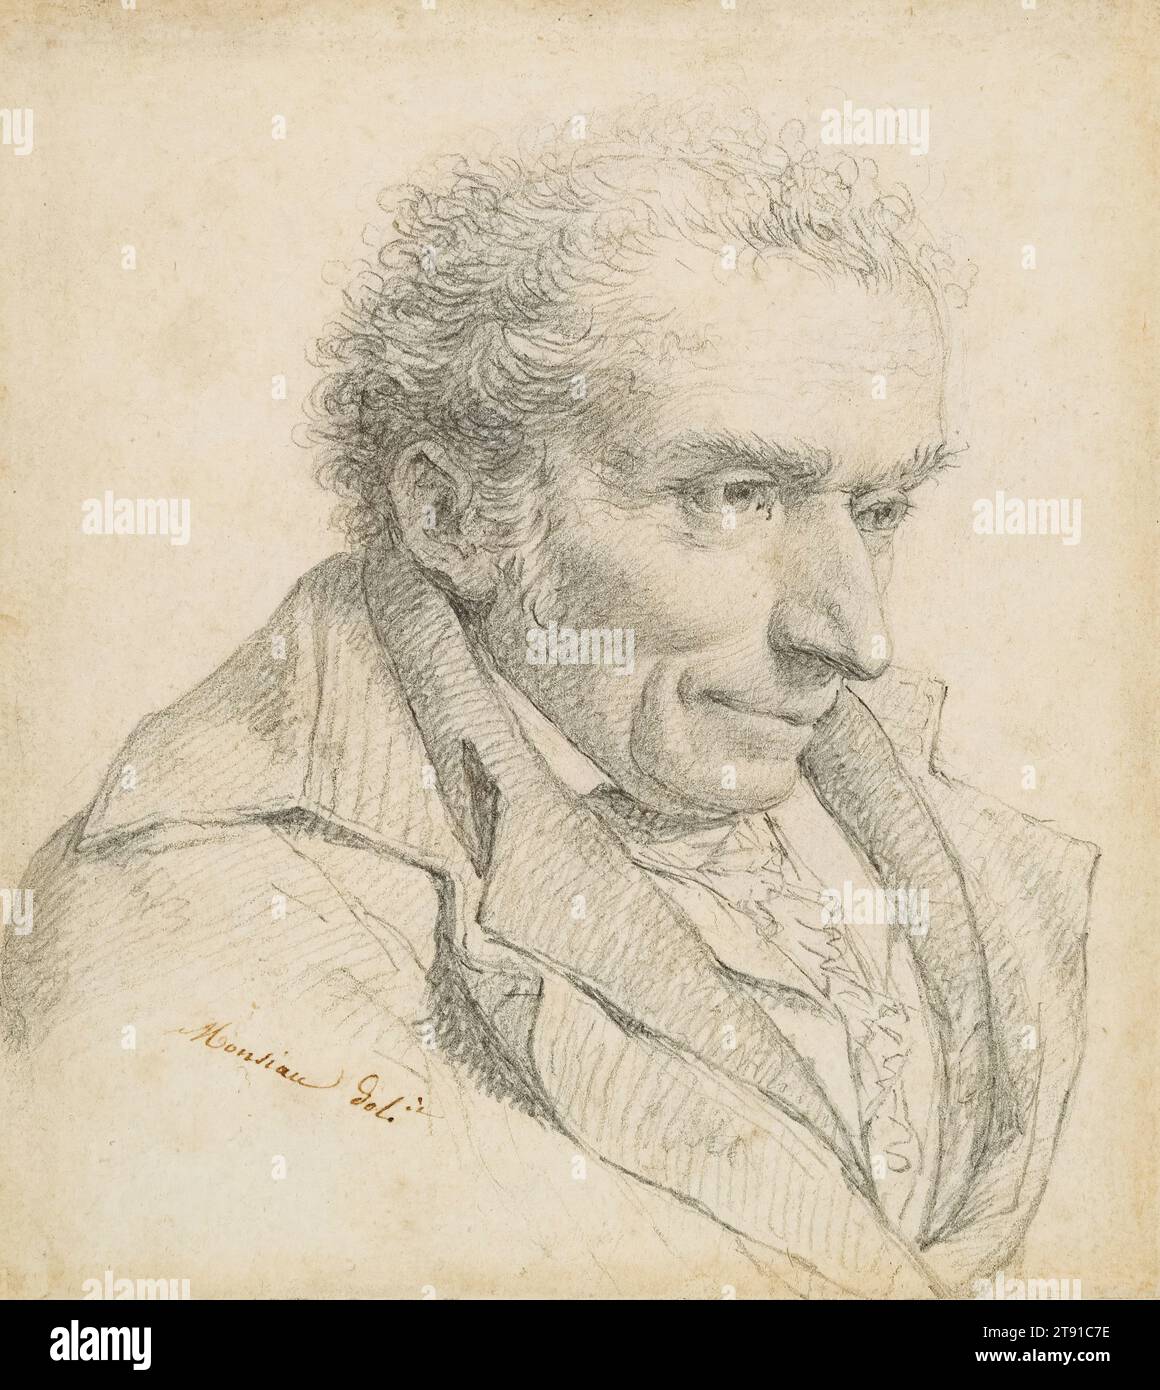 Ritratto di Houdon, c. 1803-1808, Nicolas-André Monsiau, francese, 1754 - 1837, 1/16 x 9/16 poll. (12,86 x 11,59 cm) (immagine)1/4 x 7/8 x 3/8 pollici (26,04 x 27,62 x 0,95 cm) (cornice esterna), Graphite, Francia, XIX secolo, Monsiau è stato un illustratore illustratore di temi religiosi, storici e moderni, nonché un prolifico illustratore di libri. Divenne membro della Royal Academy nel 1789 ed espose i suoi dipinti e disegni ai Salons biennali di Parigi dal 1787 al 1833. Il soggetto del portait drawing di Monsiau è Jean-Antoine Houdon (1754-1828), a sua volta un famoso ritrattista Foto Stock